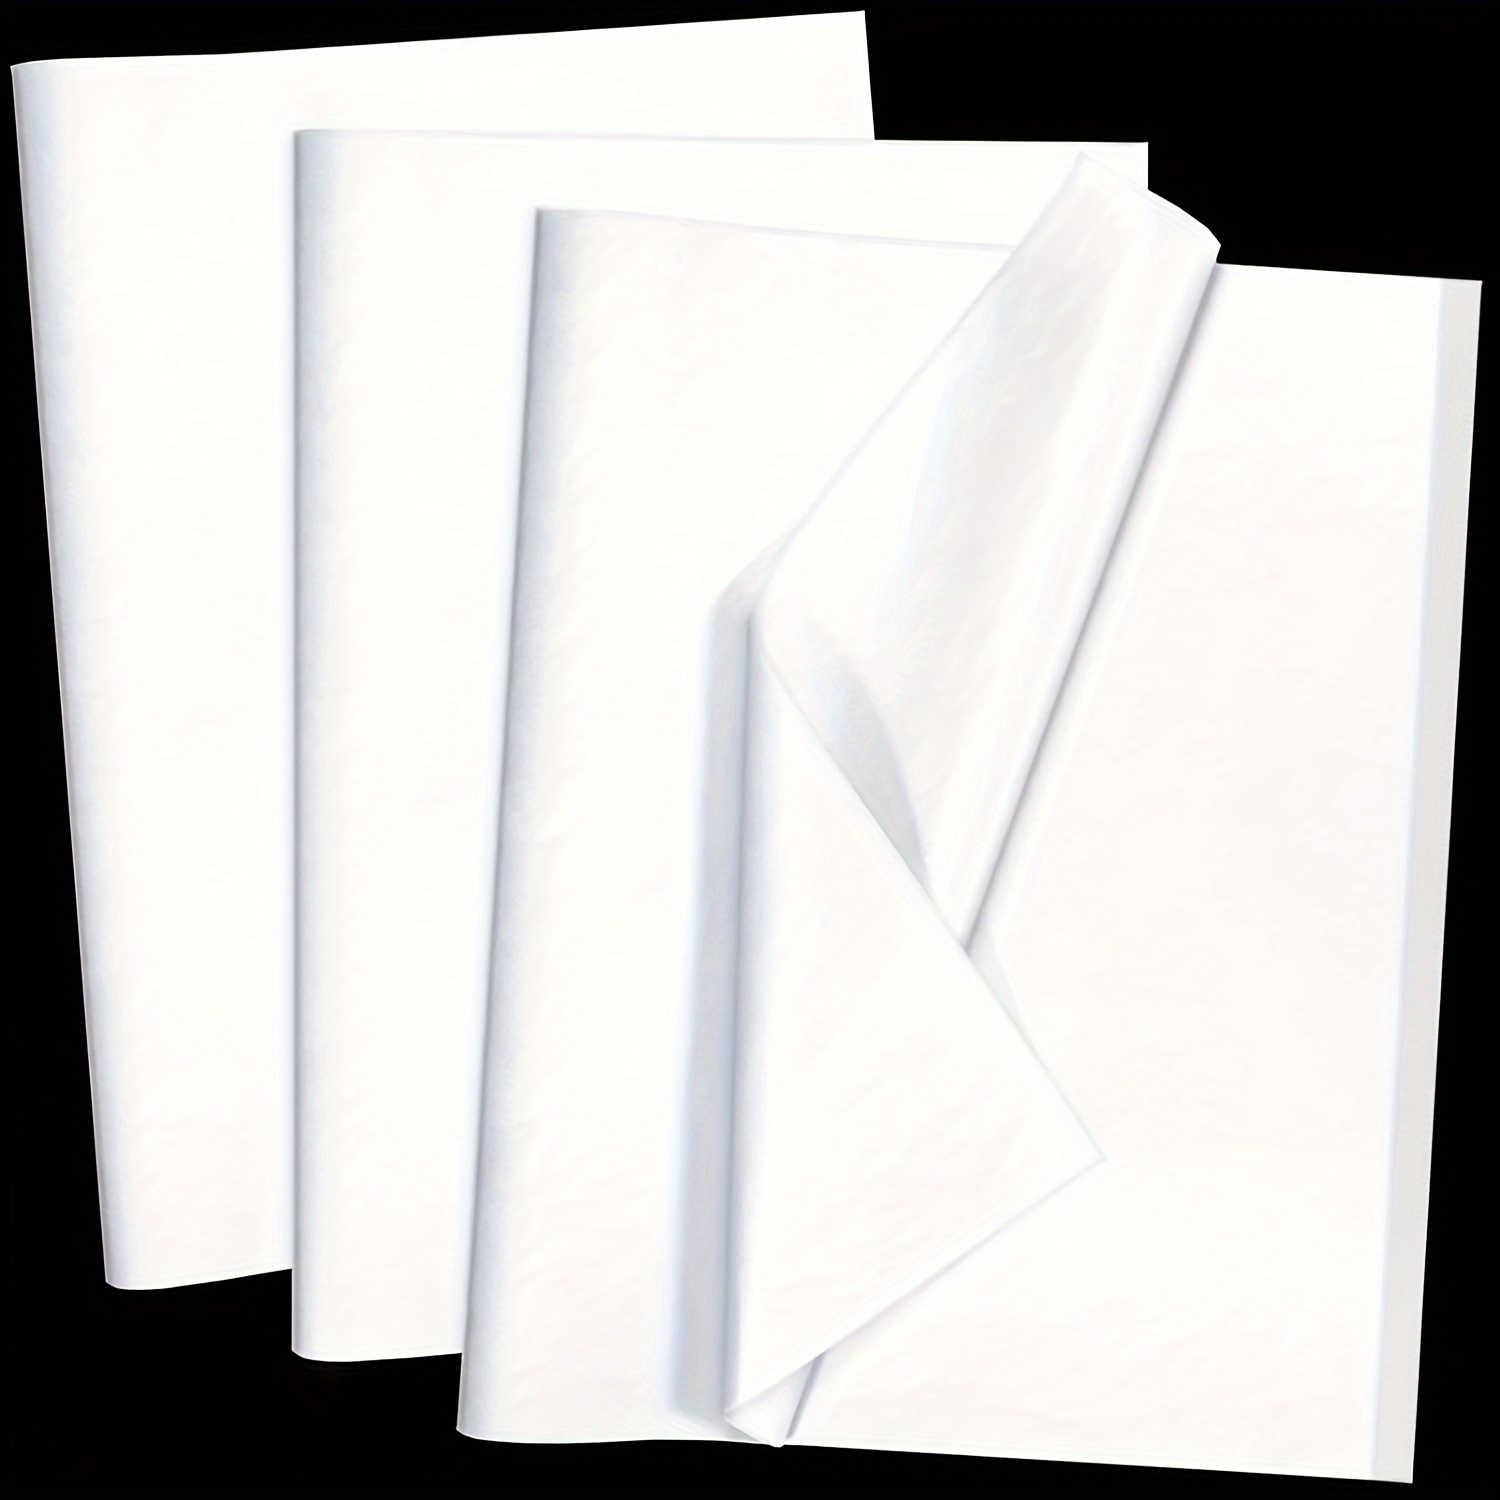 100 Sheets White Tissue Paper 20X14 Inches Tissue Paper Bulk for